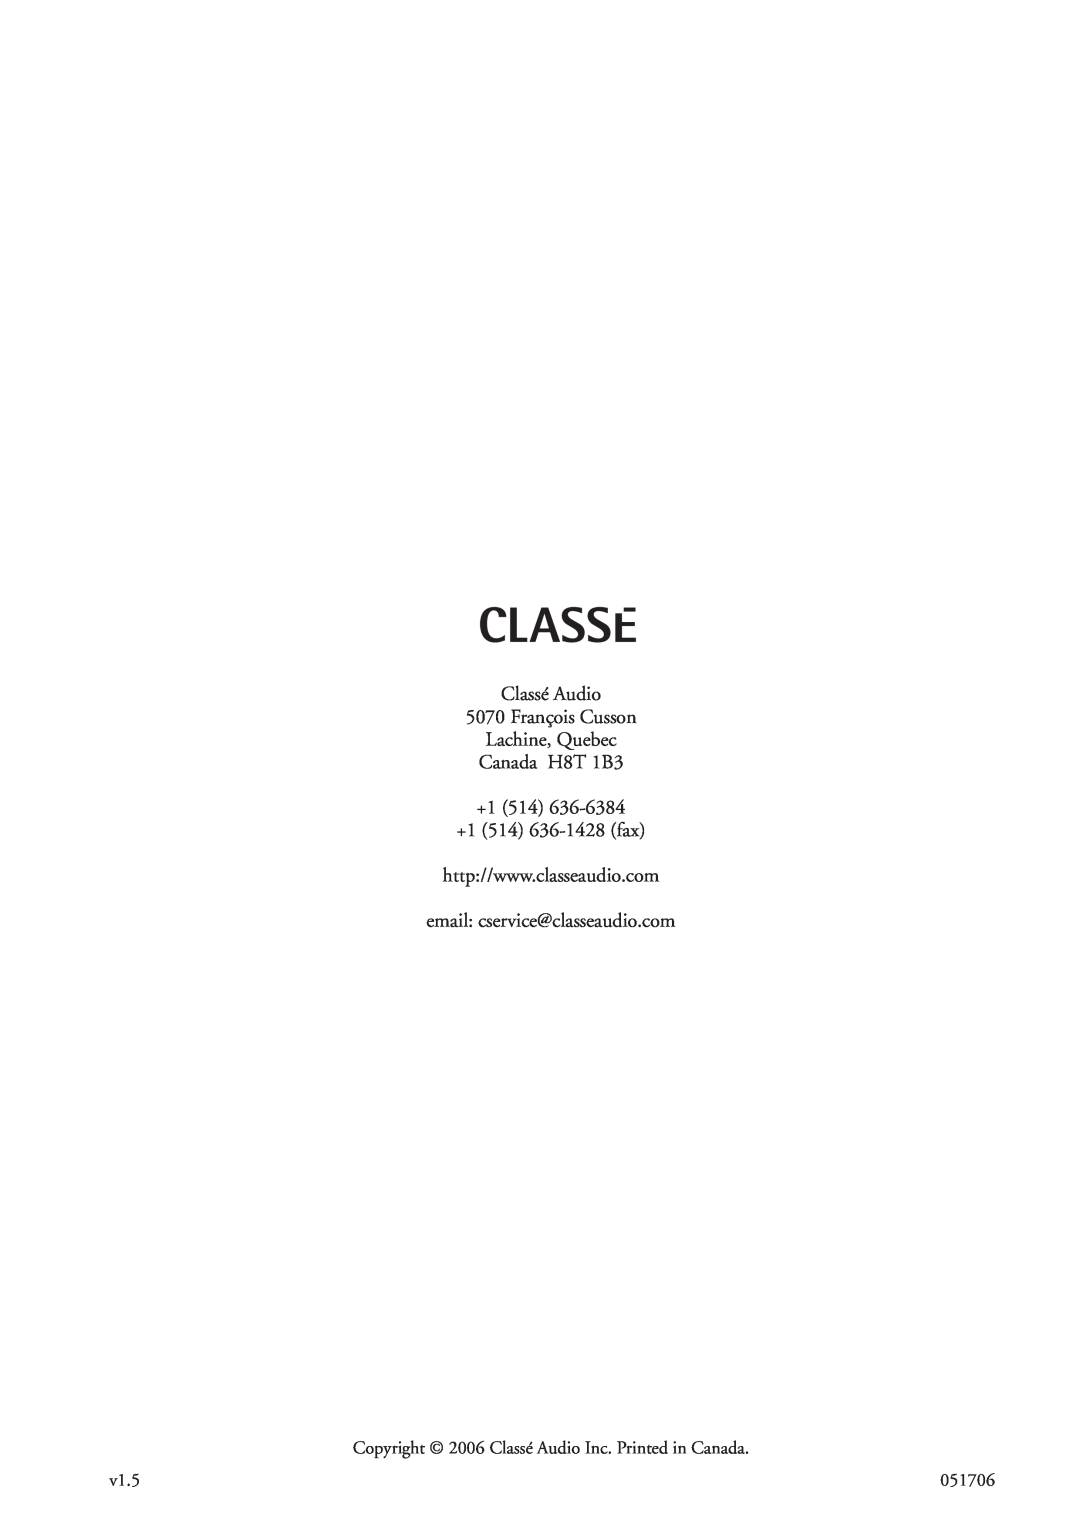 Classe Audio cp-700 Classé Audio 5070 François Cusson Lachine, Quebec, Canada H8T 1B3 +1 514 +1 514 636-1428fax, v1.5 